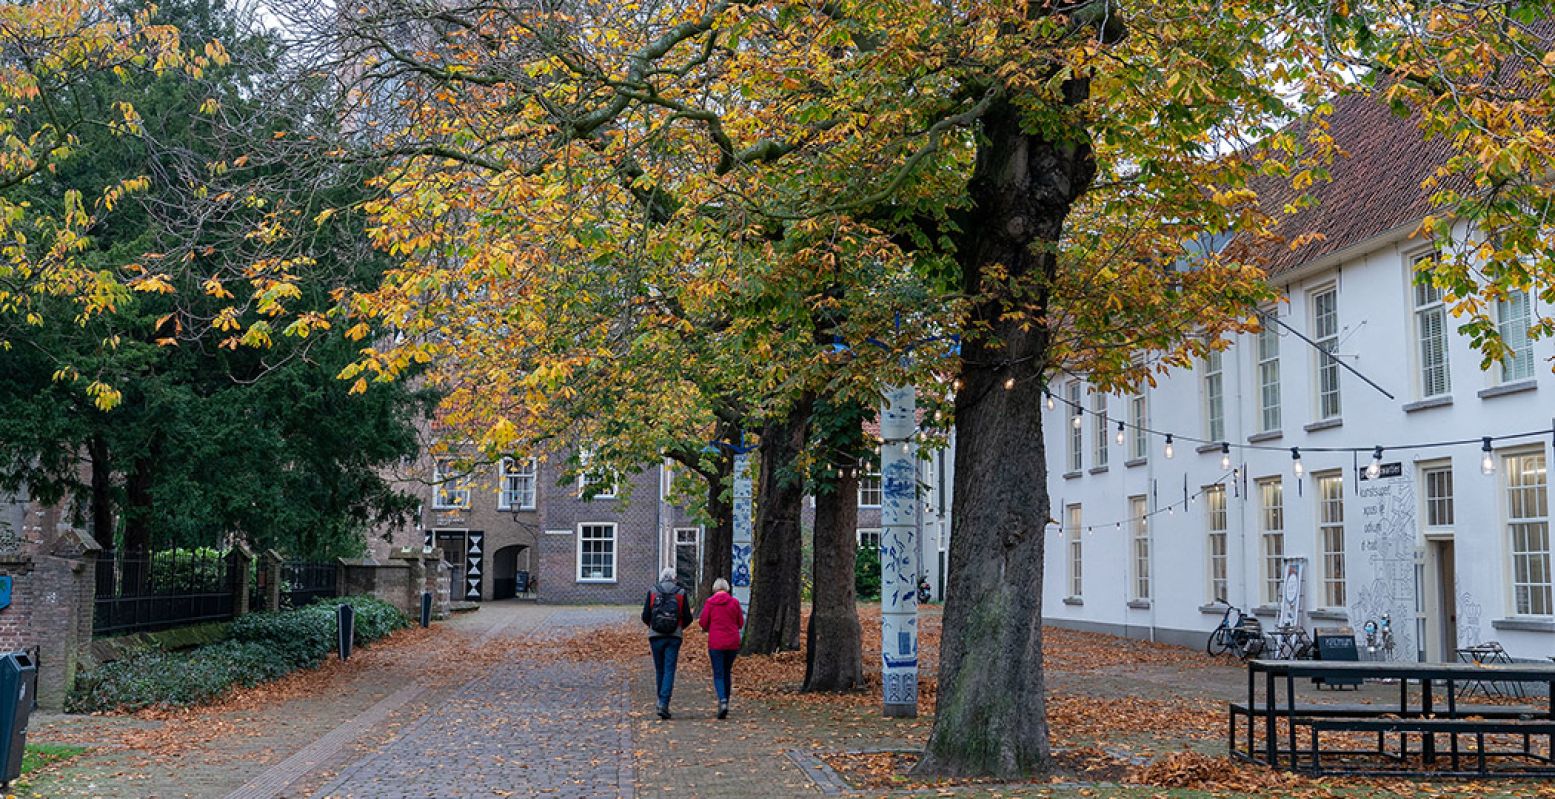 Ontdek de mooiste plekjes in Delft, zoals het steegje langs Museum Prinsenhof. Foto: Delft.com © Michael Kooren